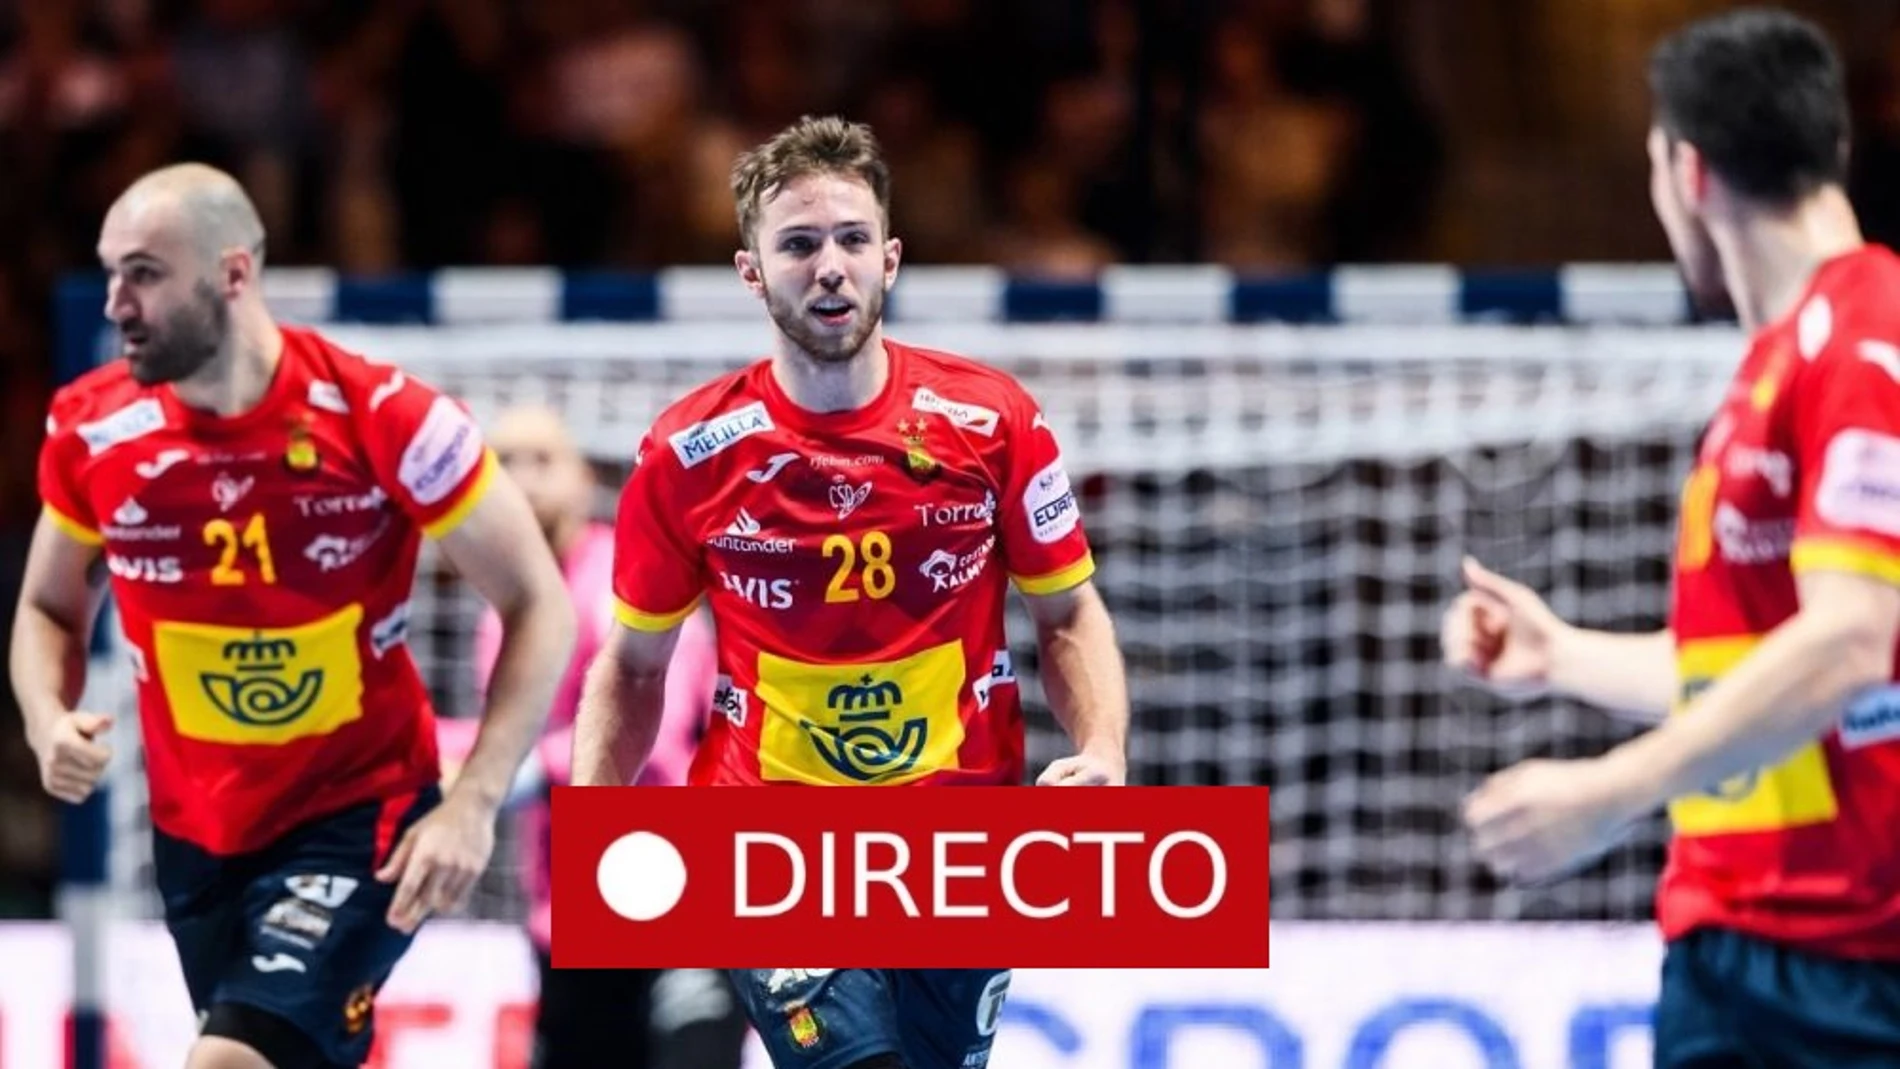 España - Croacia en directo | Final del Campeonato Europeo de Balonmano Masculino de 2020